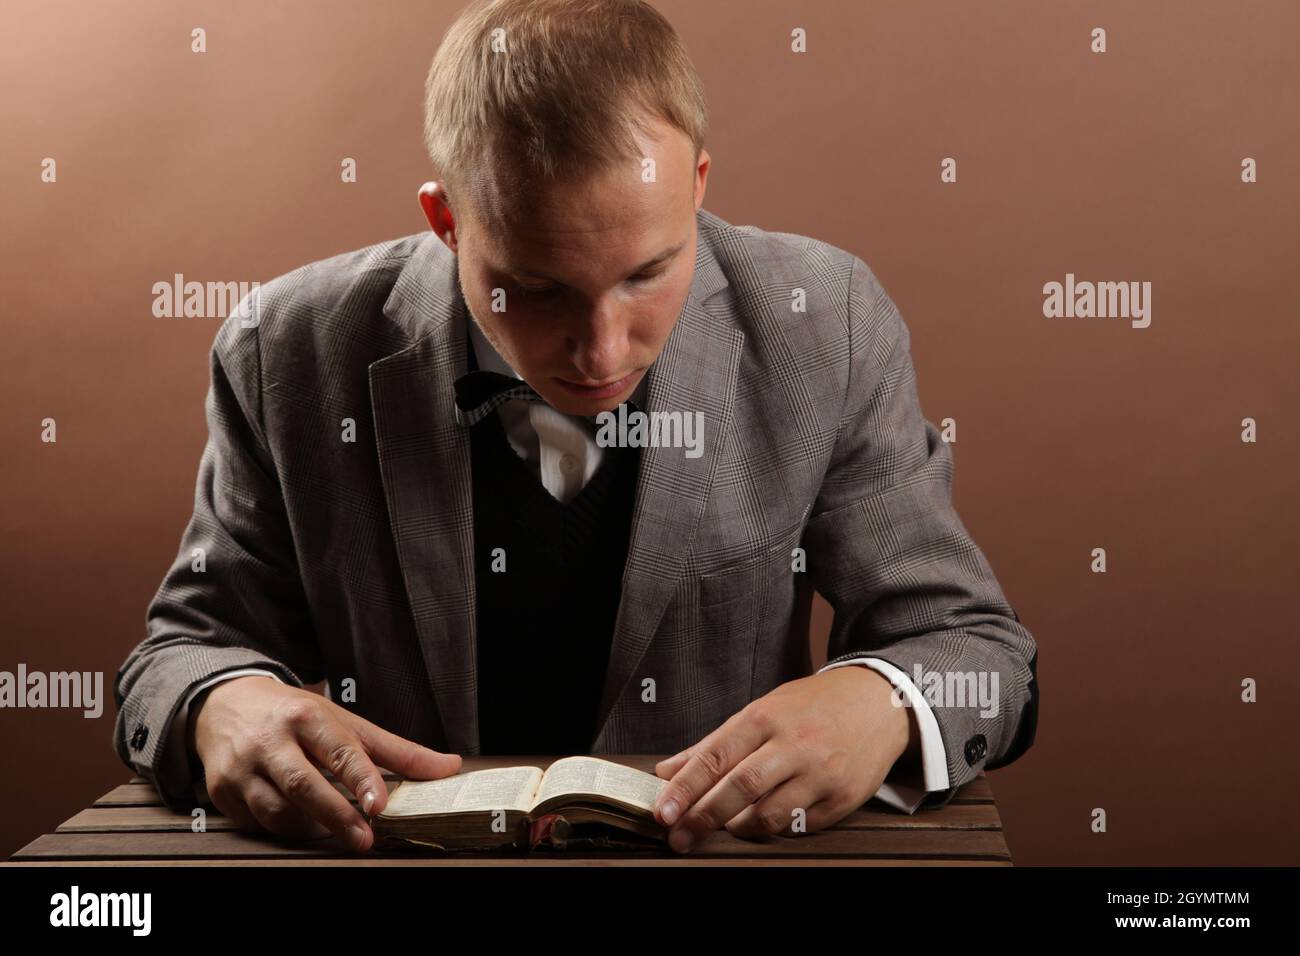 Un uomo d'affari bello e sicuro in un vestito, seduto da solo su uno sfondo marrone e leggendo un libro. Accanto ad un tavolo di legno. Foto di alta qualità Foto Stock